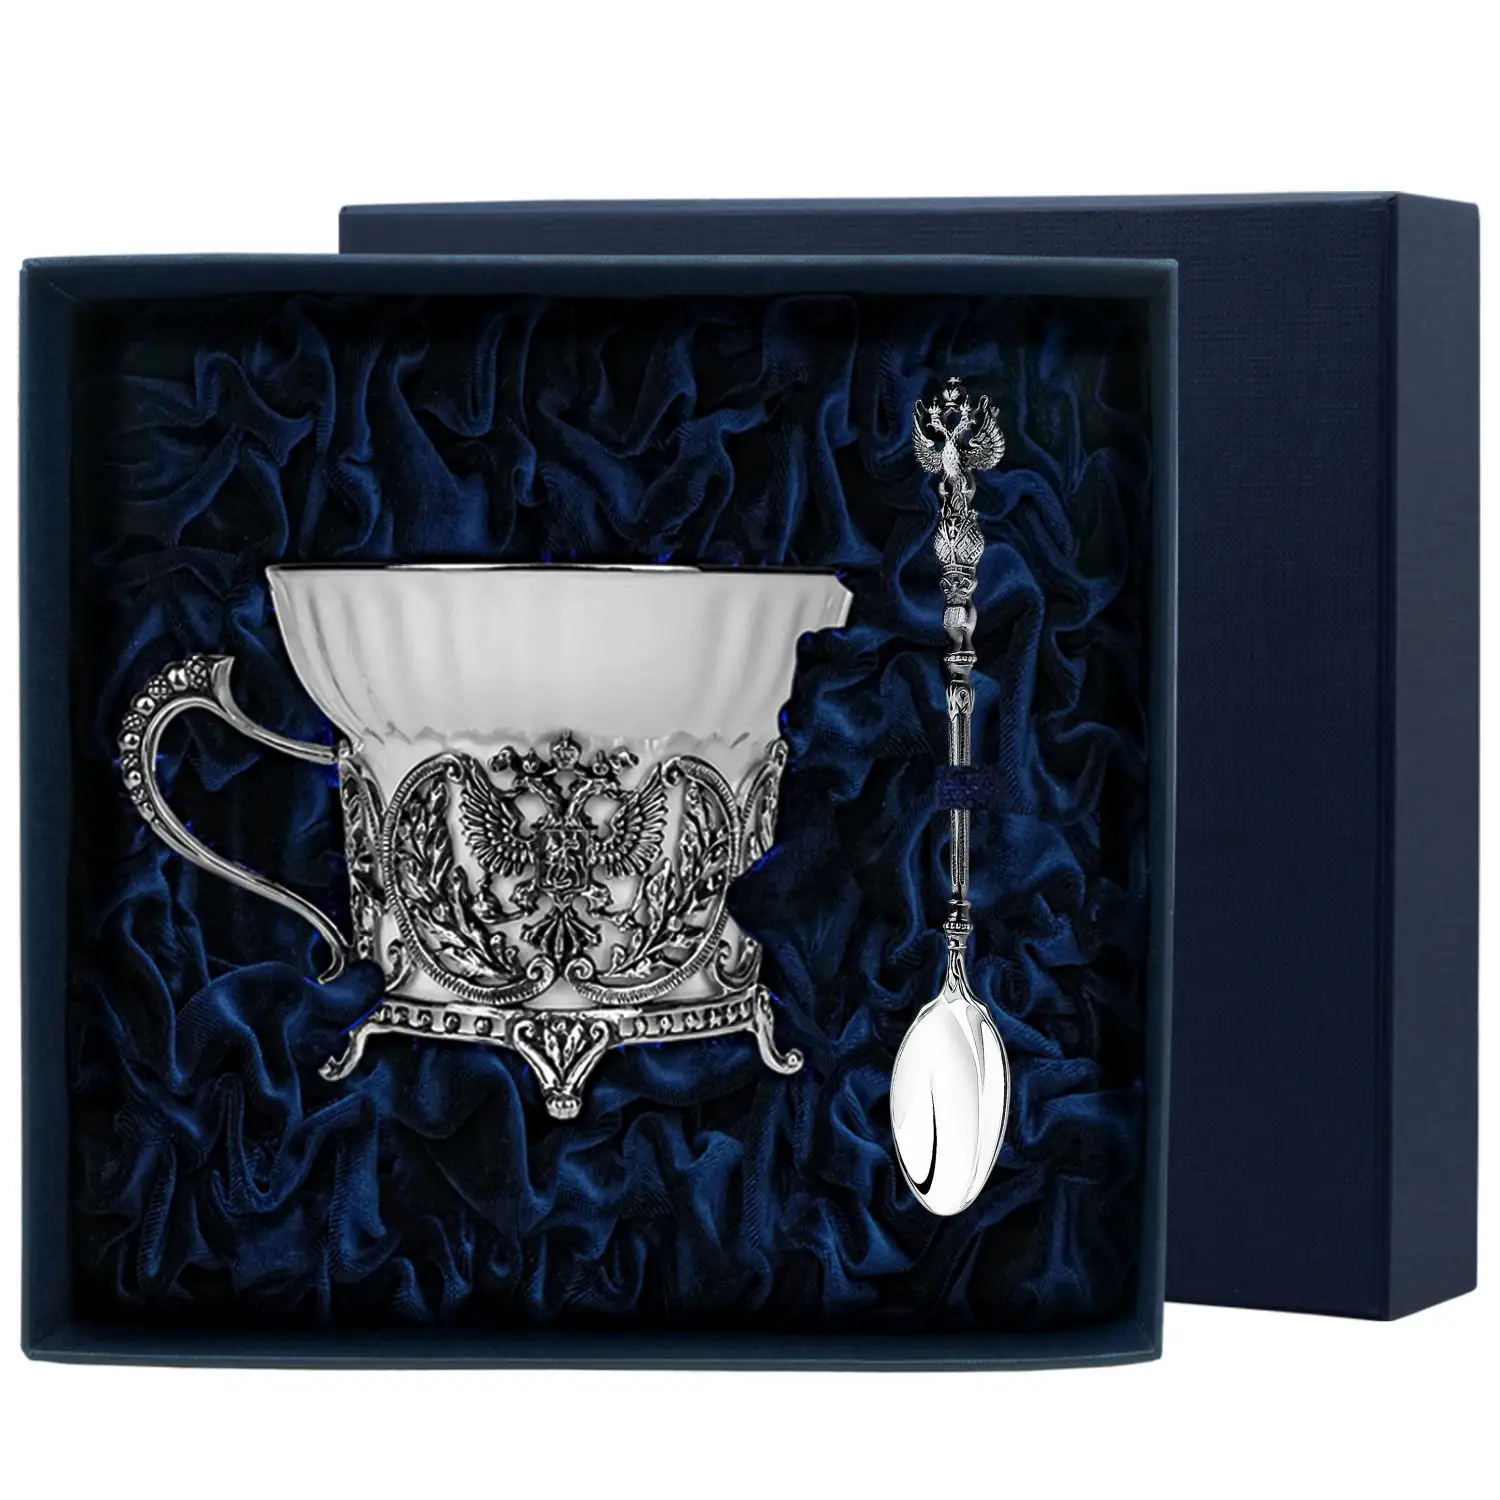 Набор чайная чашка Герб: ложка, чашка (Серебро 925) набор чайная чашка лебедь ложка чашка серебро 925